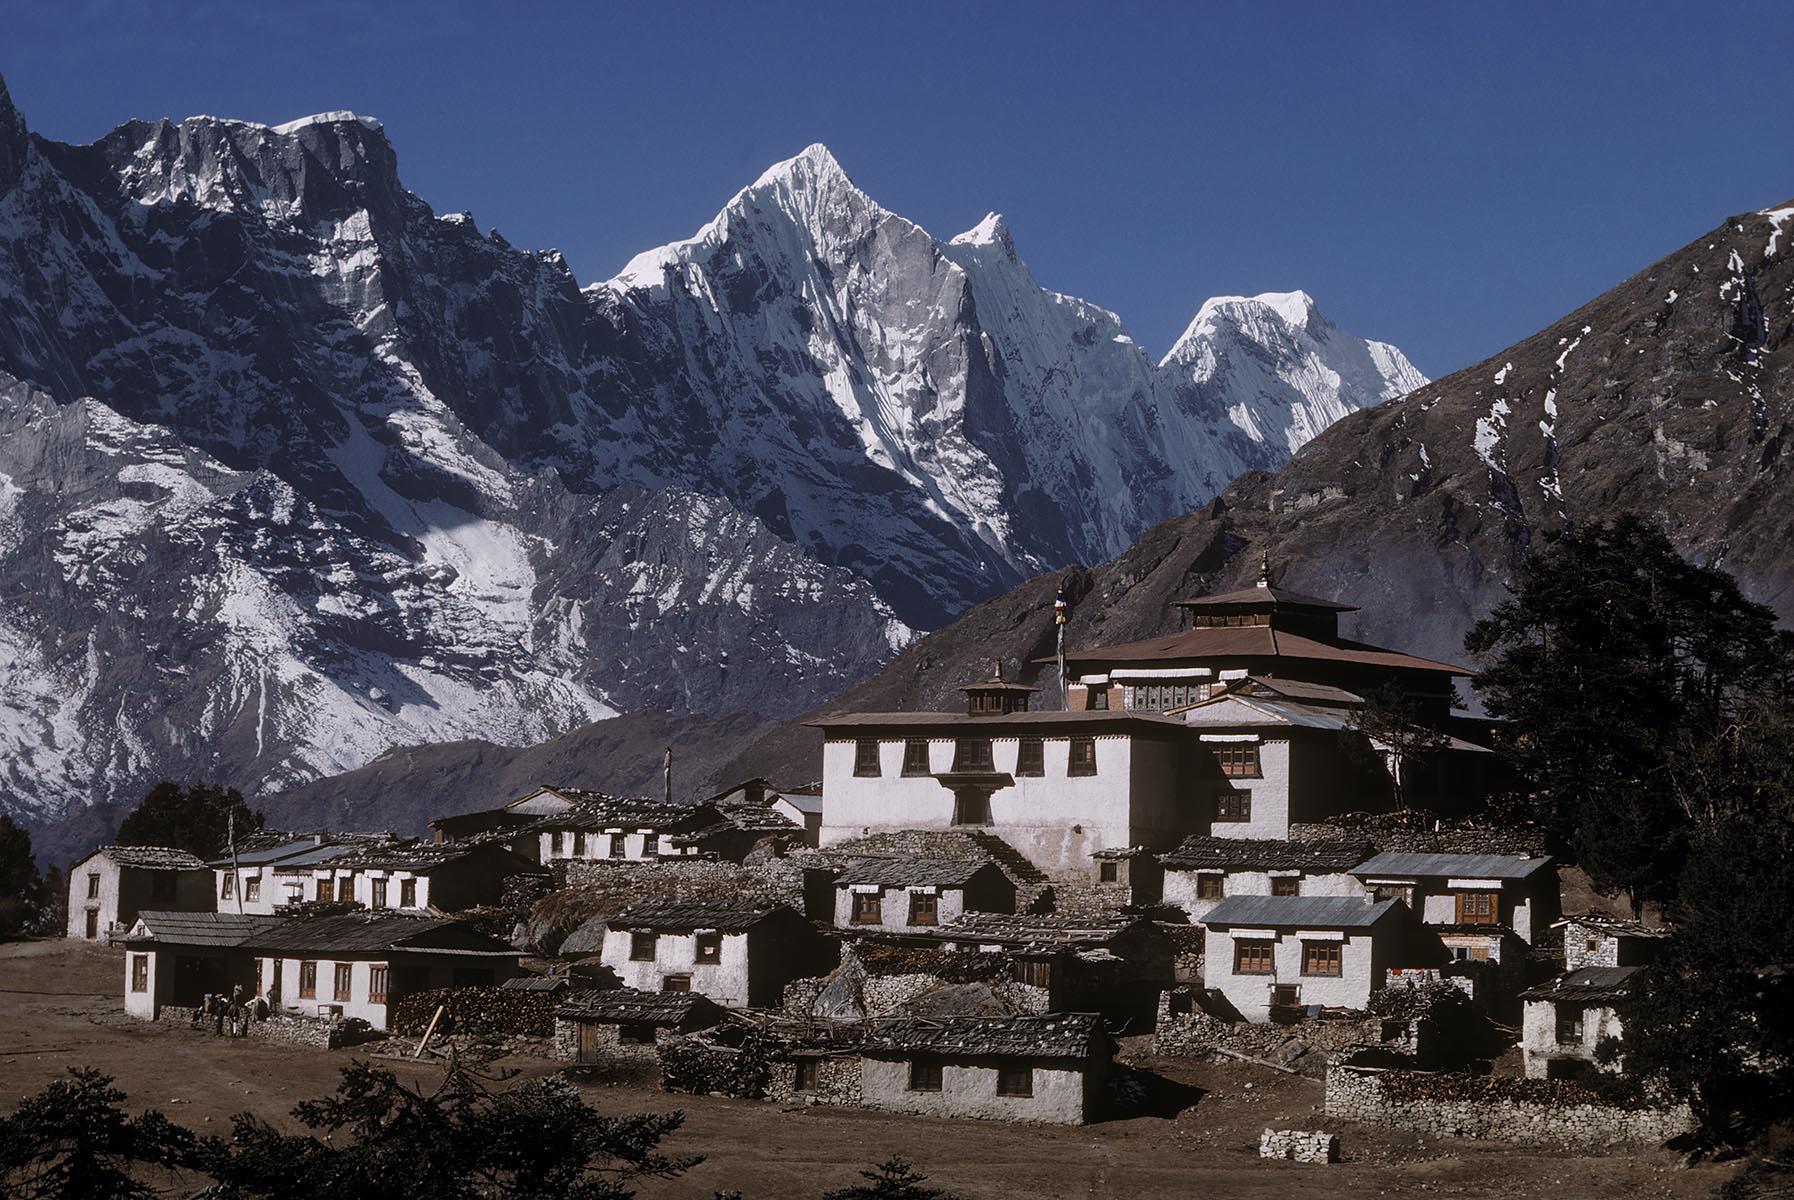 Himalayan peaks tower behind houses in the village of Tengboche, Khumbu, Nepal.